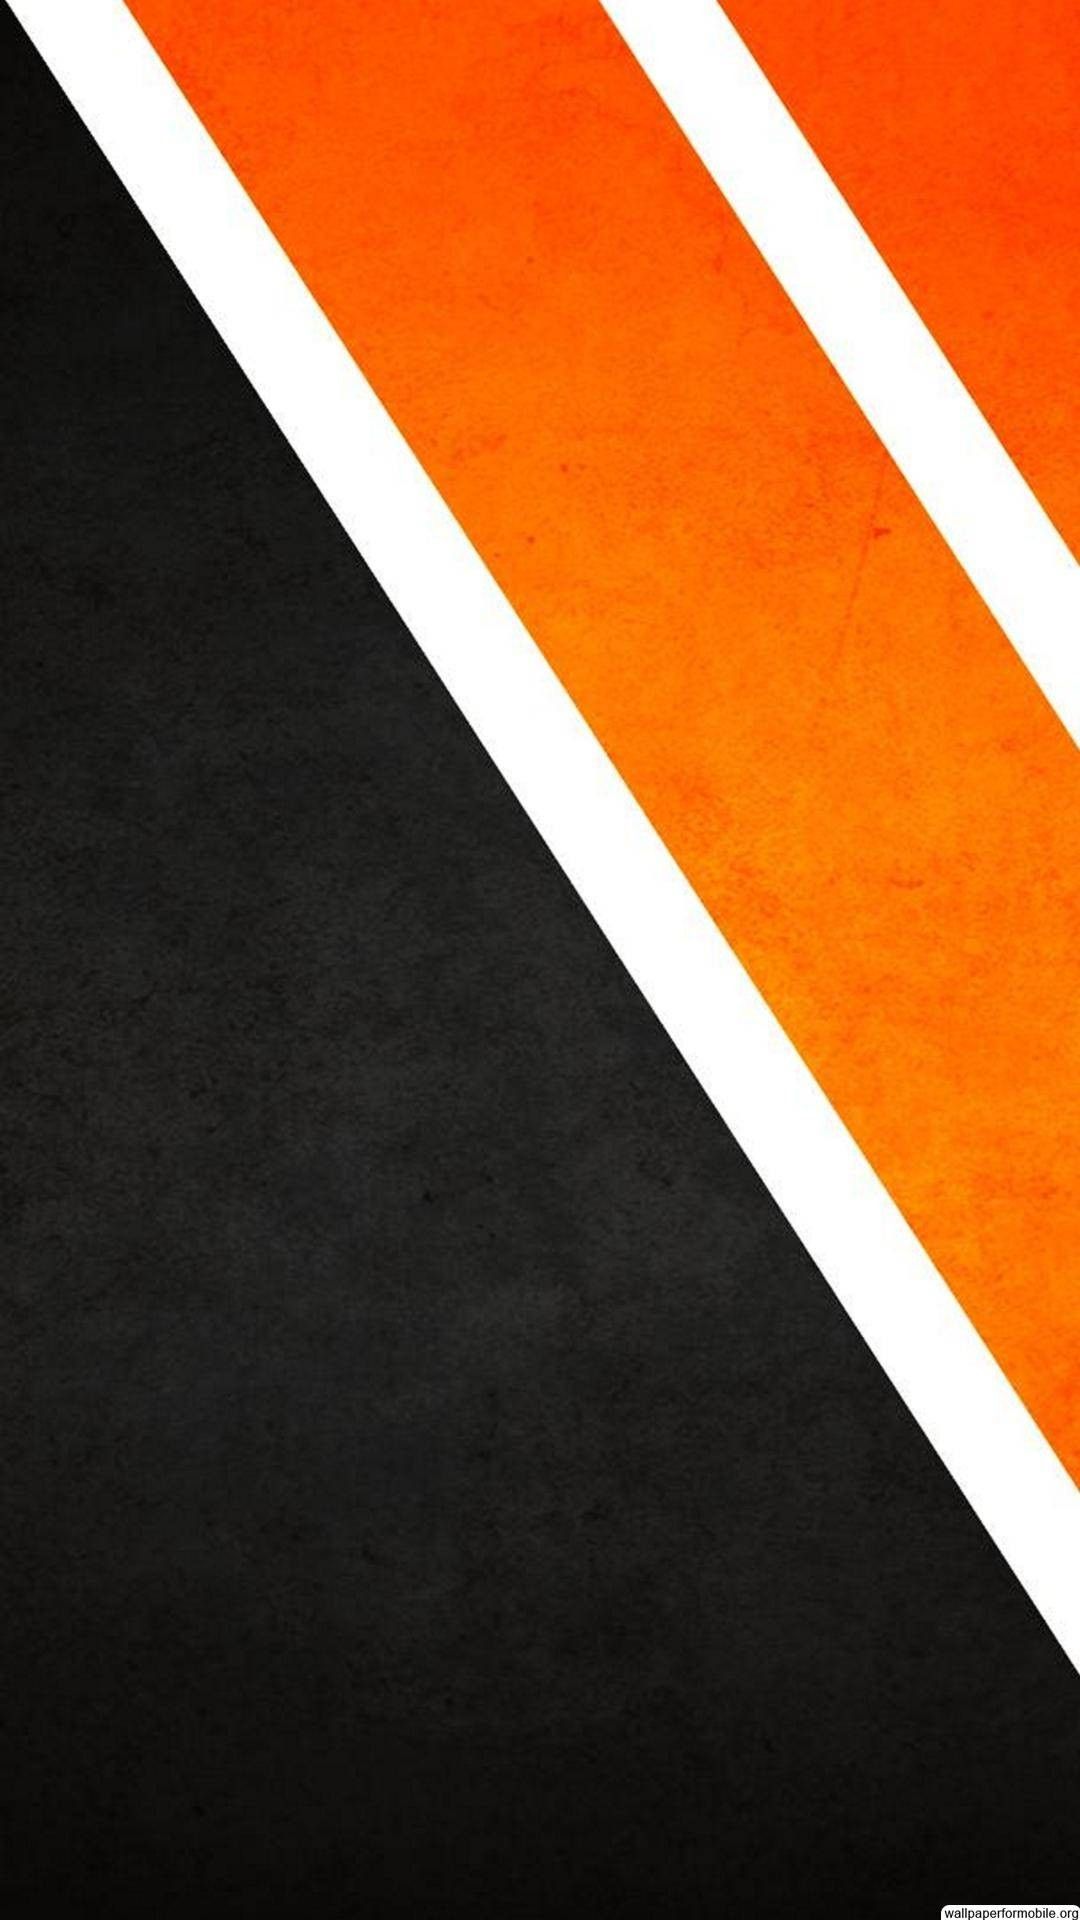 Free download 74 Orange Black Wallpaper [1080x1920] for your Desktop, Mobile & Tablet. Explore Orange And Black Wallpaper. Black And Orange Background, Orange And Black Wallpaper, Black and Orange Wallpaper